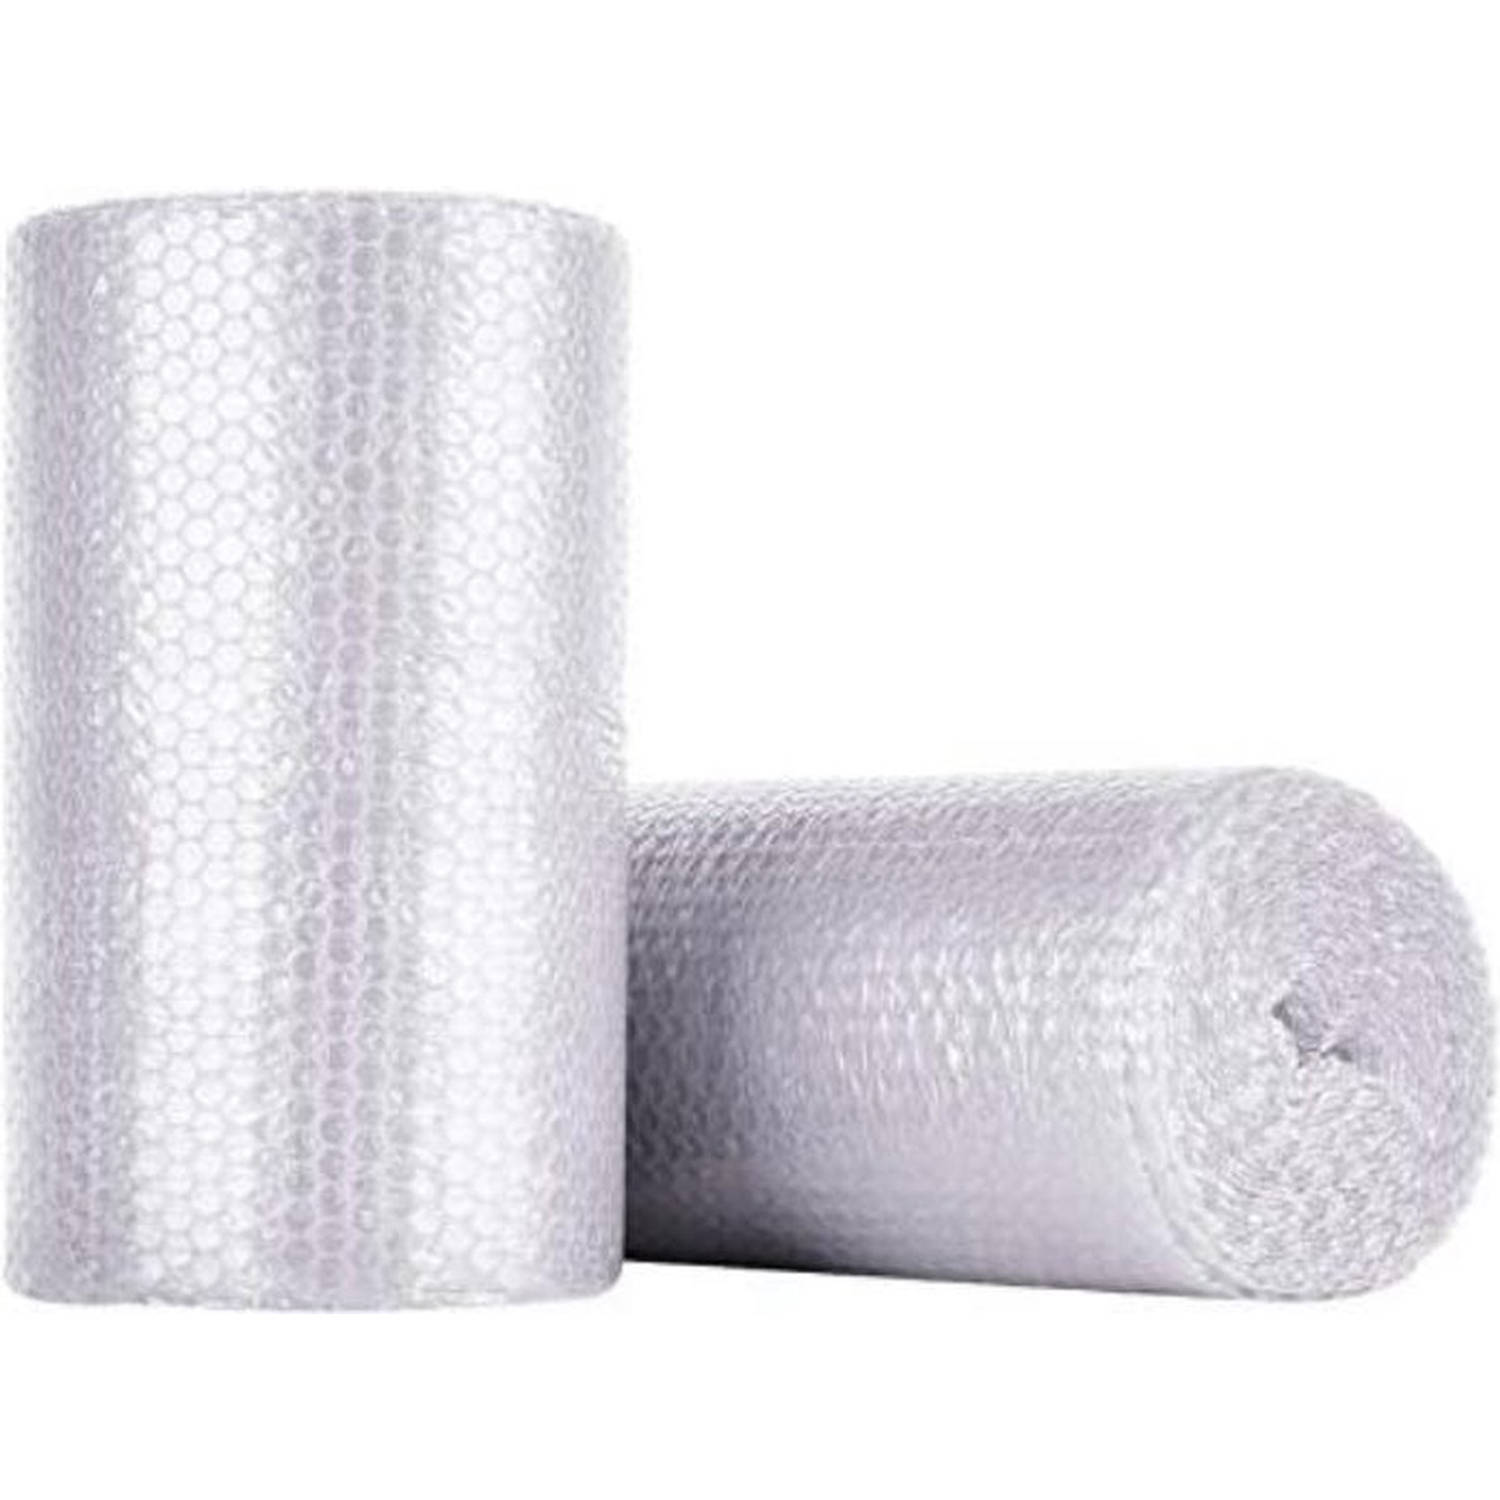 Noppenfolie - 40cm x 10m  - Extra sterk - Bubble Wrap Rol - Bubbeltjes plastic - Bescherm uw spullen - Voor inpakken en verhuizen - Bubbeltjesplastic